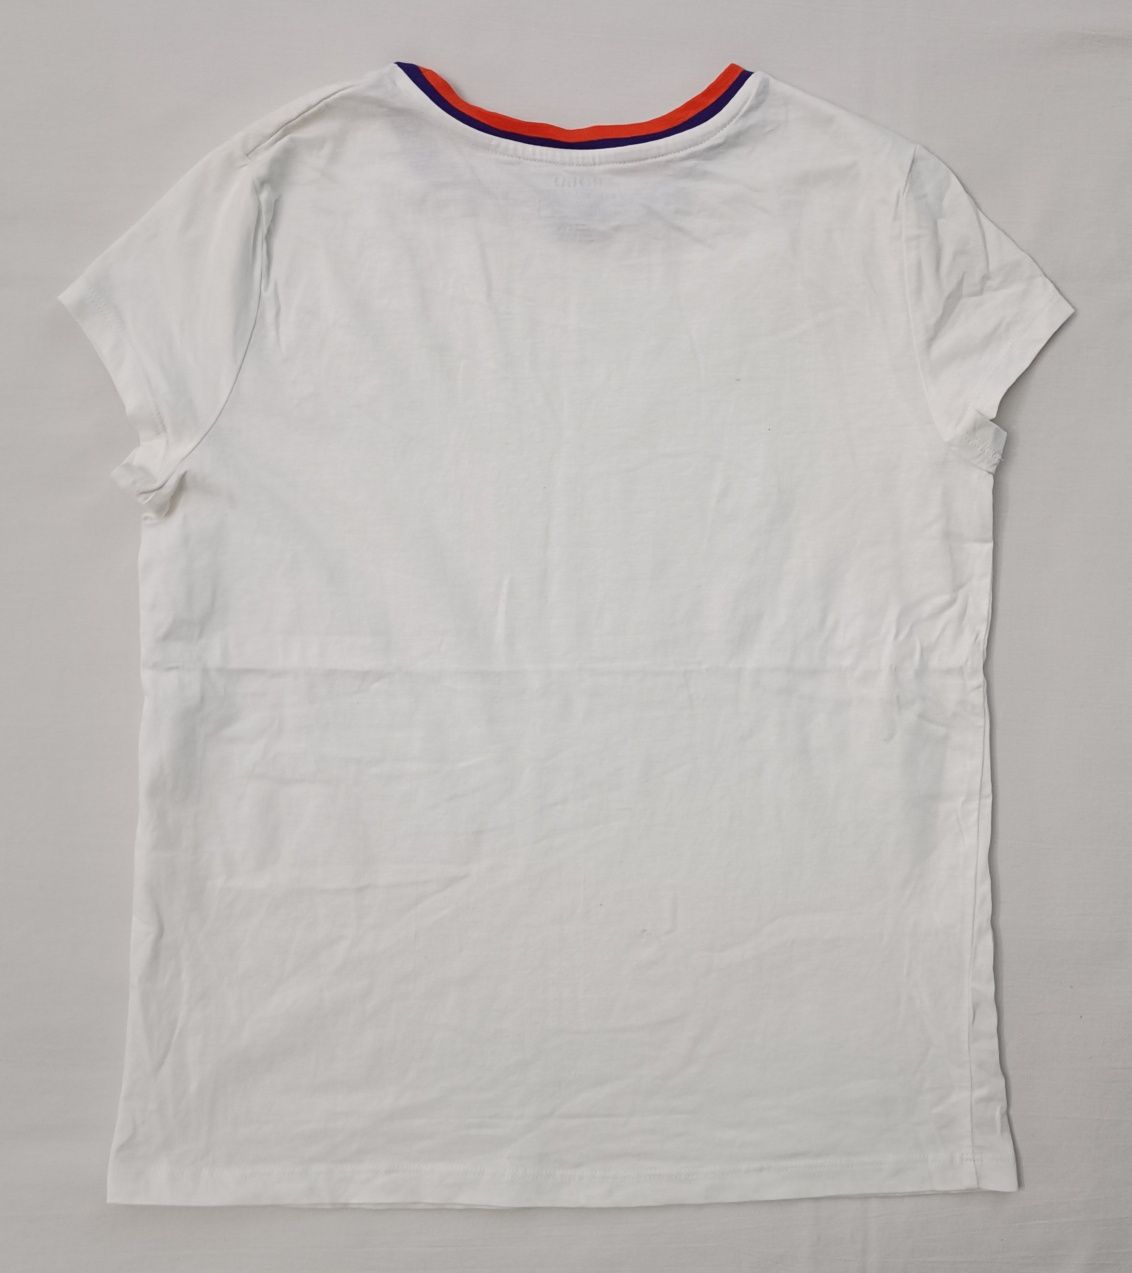 POLO Ralph Lauren Logo Tee оригинална тениска ръст 156-166см памучна